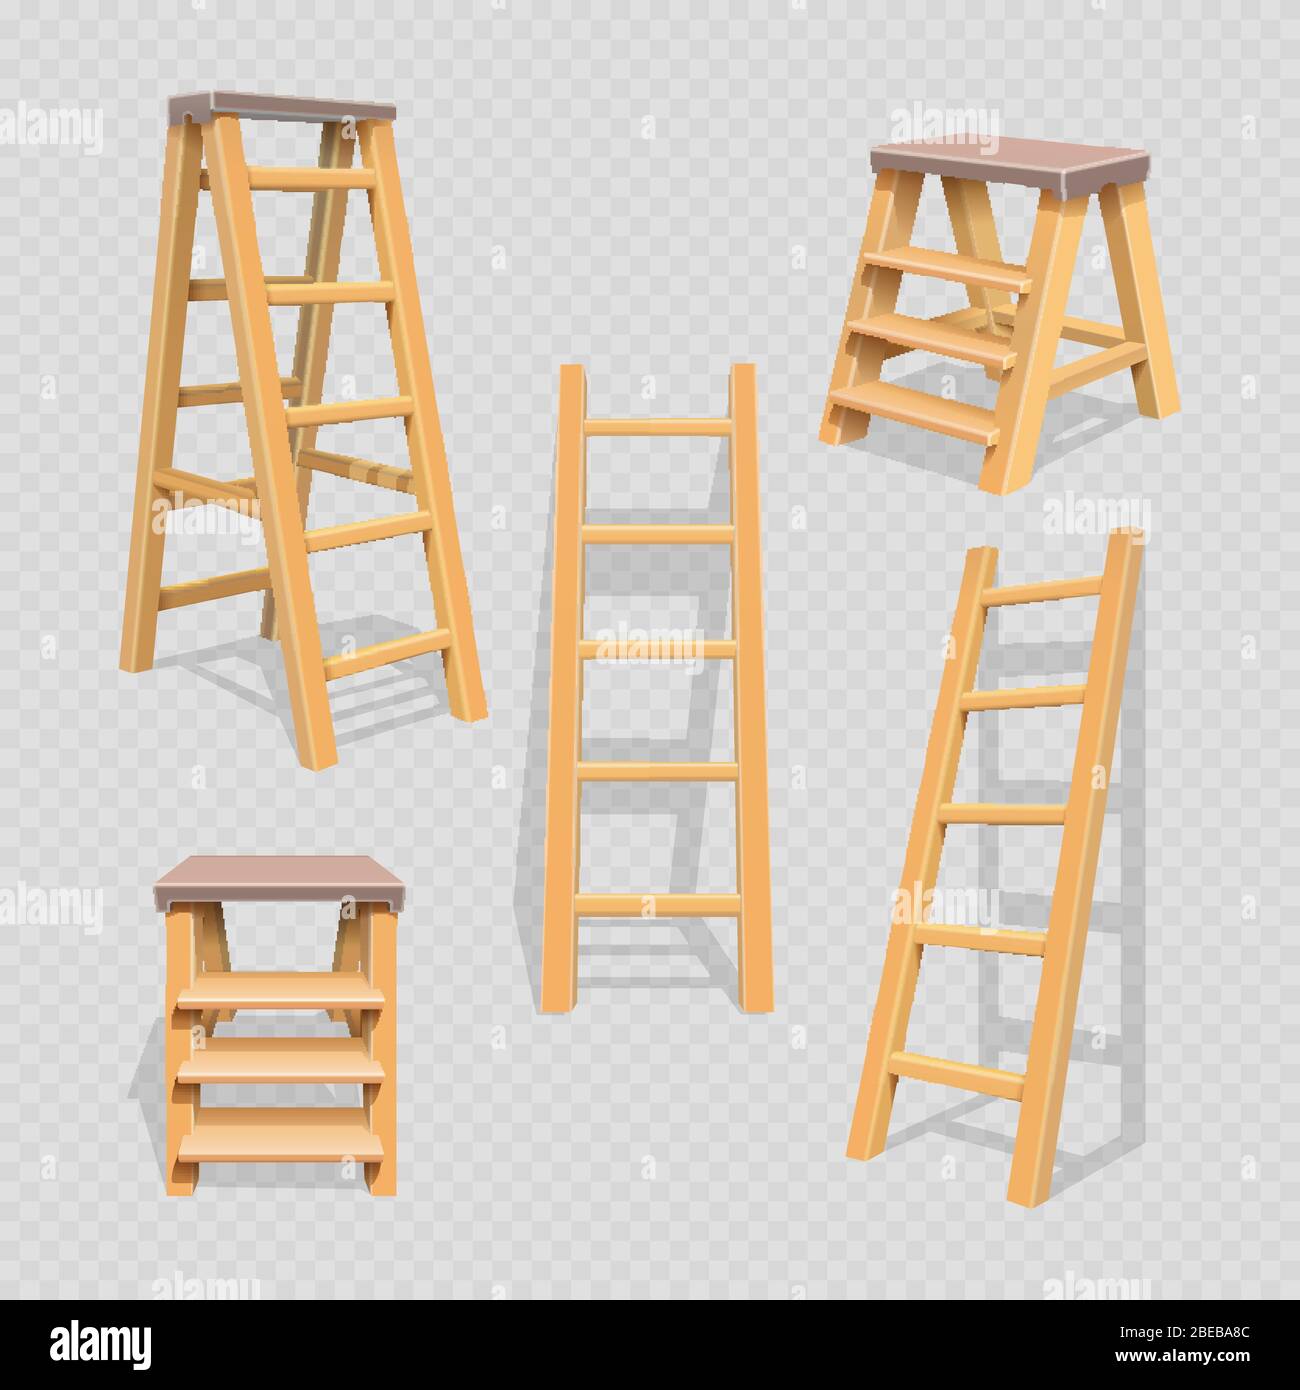 Wood household steps set on transparent background. Wood stepladder and wooden ladder, vector illustration Stock Vector